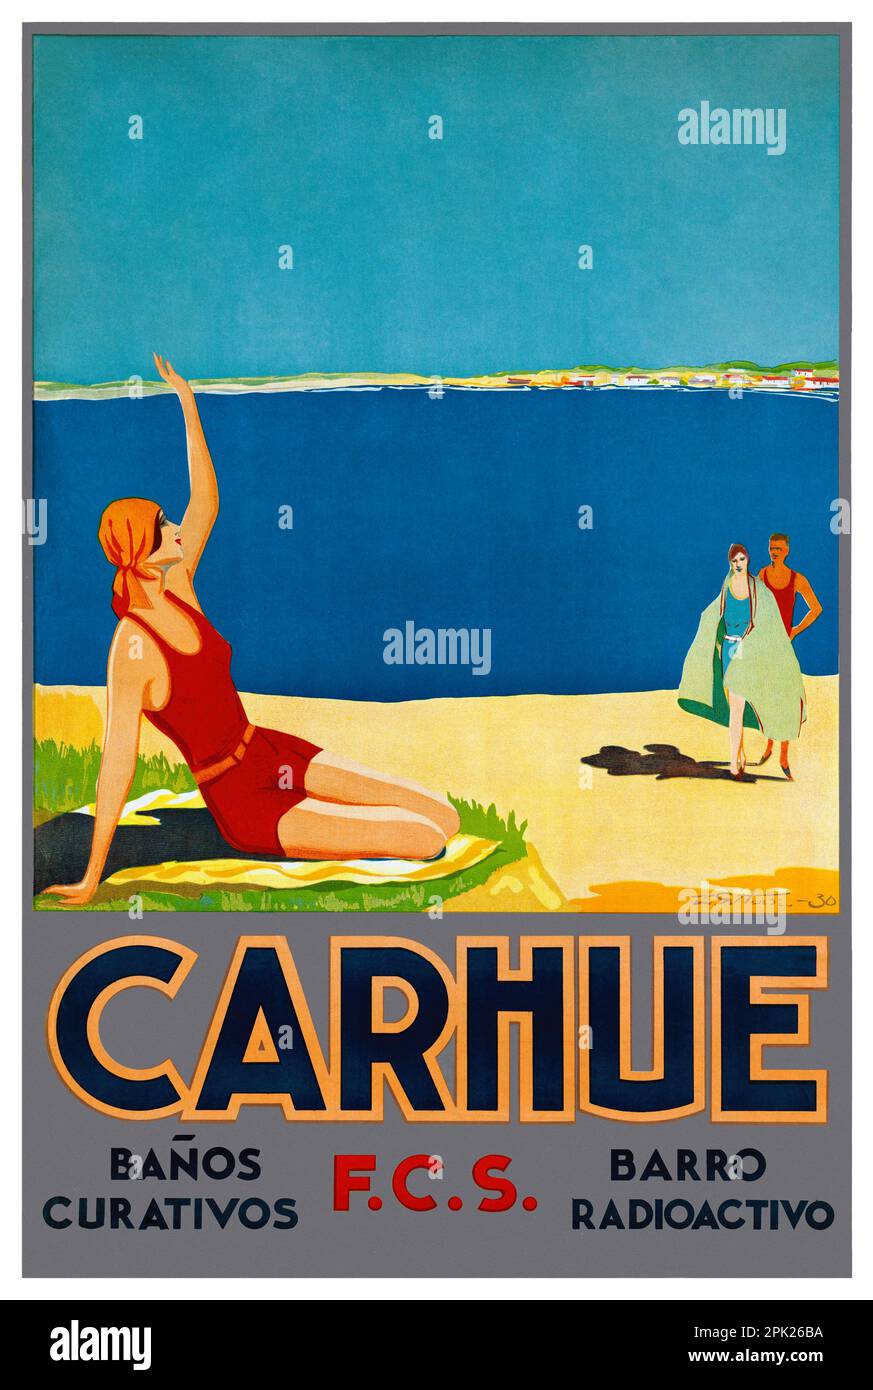 Carhue. Banos Curativos. F.C.S. Barro Radioactivo. Künstler unbekannt. Poster wurde 1930 in Argentinien veröffentlicht. Stockfoto